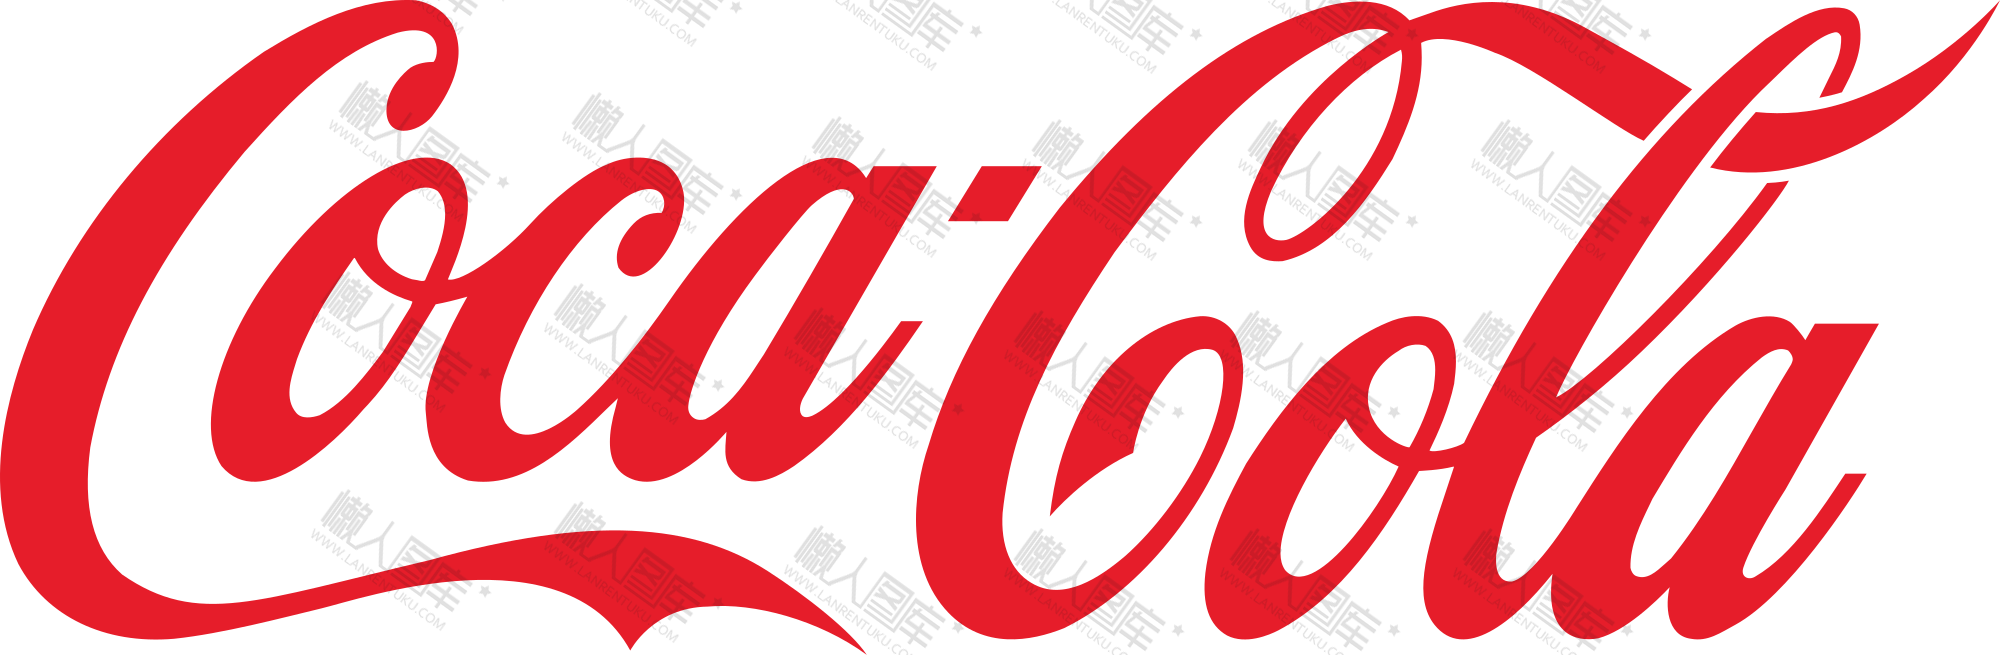 可口可乐英文标志